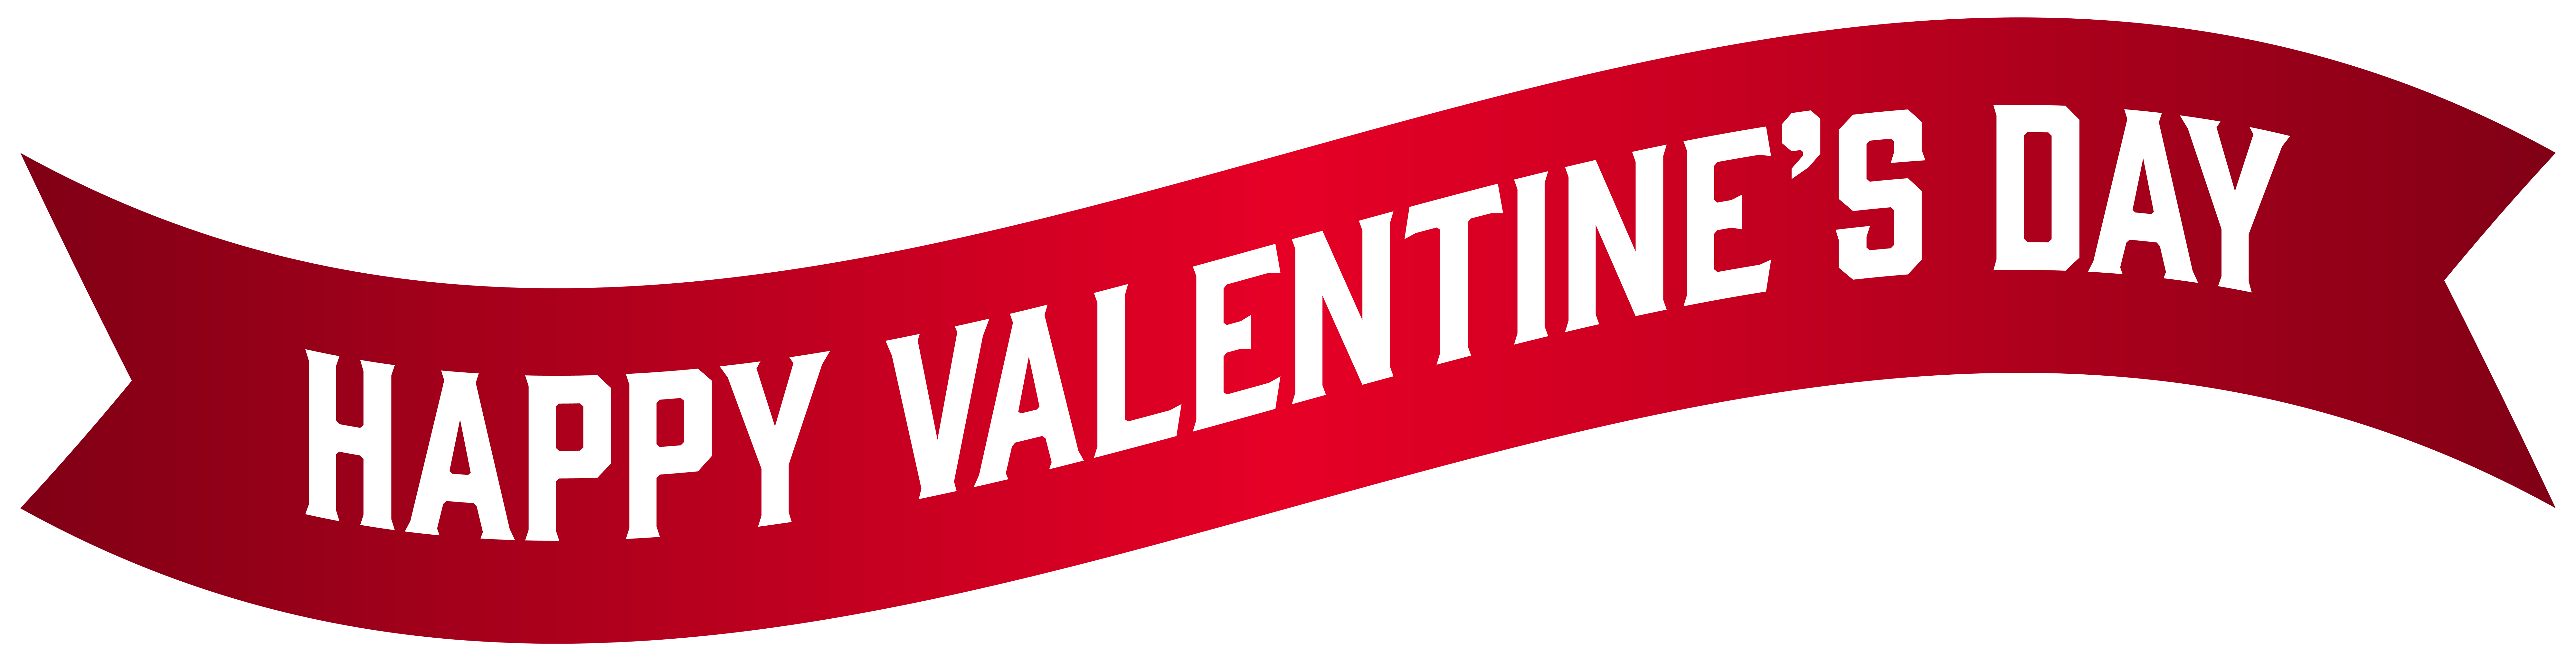 Day clip art valentine. Clipart banner valentines